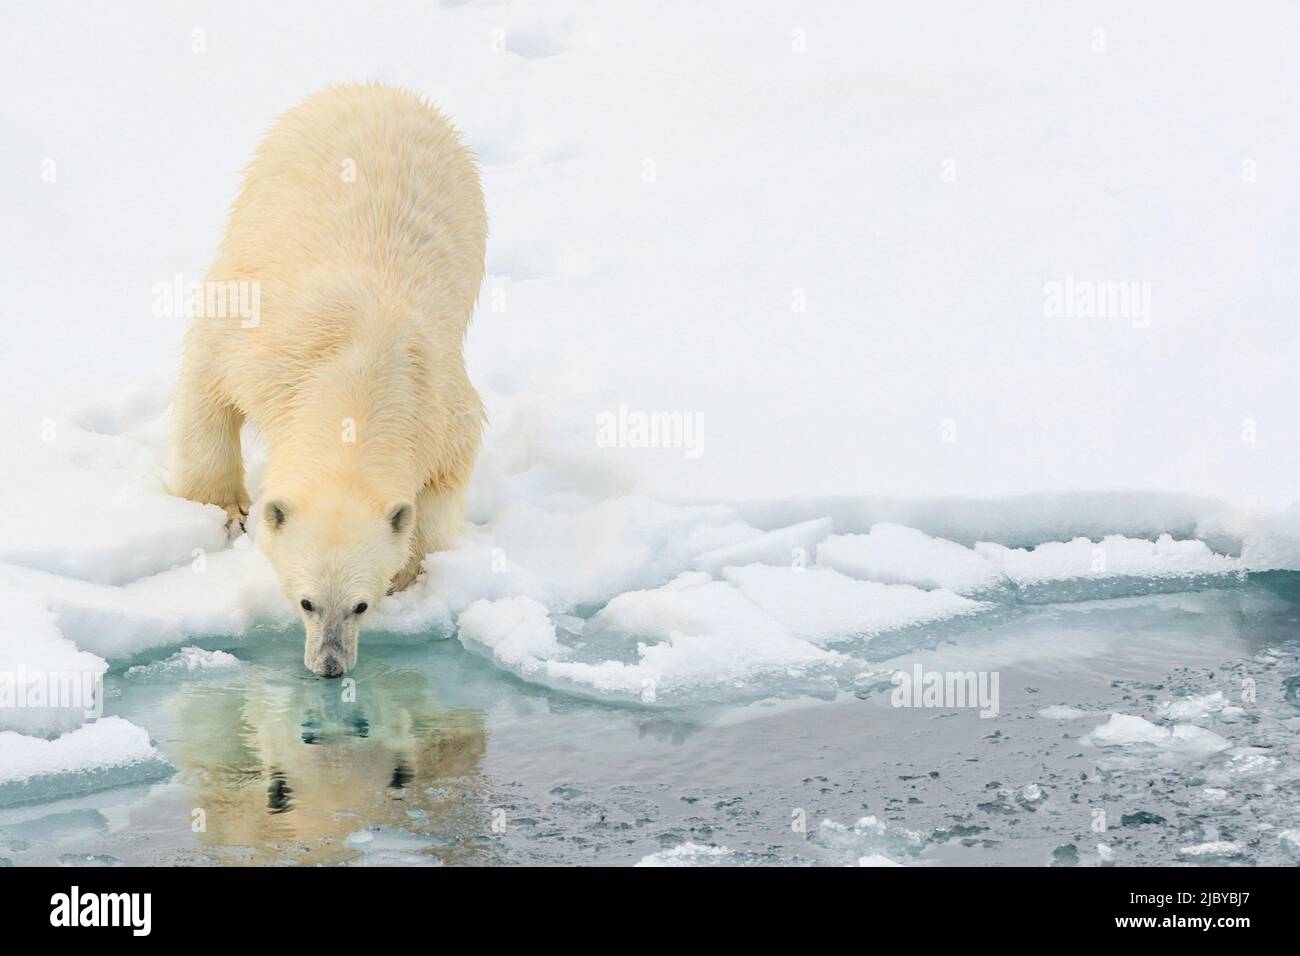 Eisbär (Ursus maritimus) auf dem Packeis, Arktischer Ozean, Hinlopenstraße, Spitzbergen, Norwegen Stockfoto